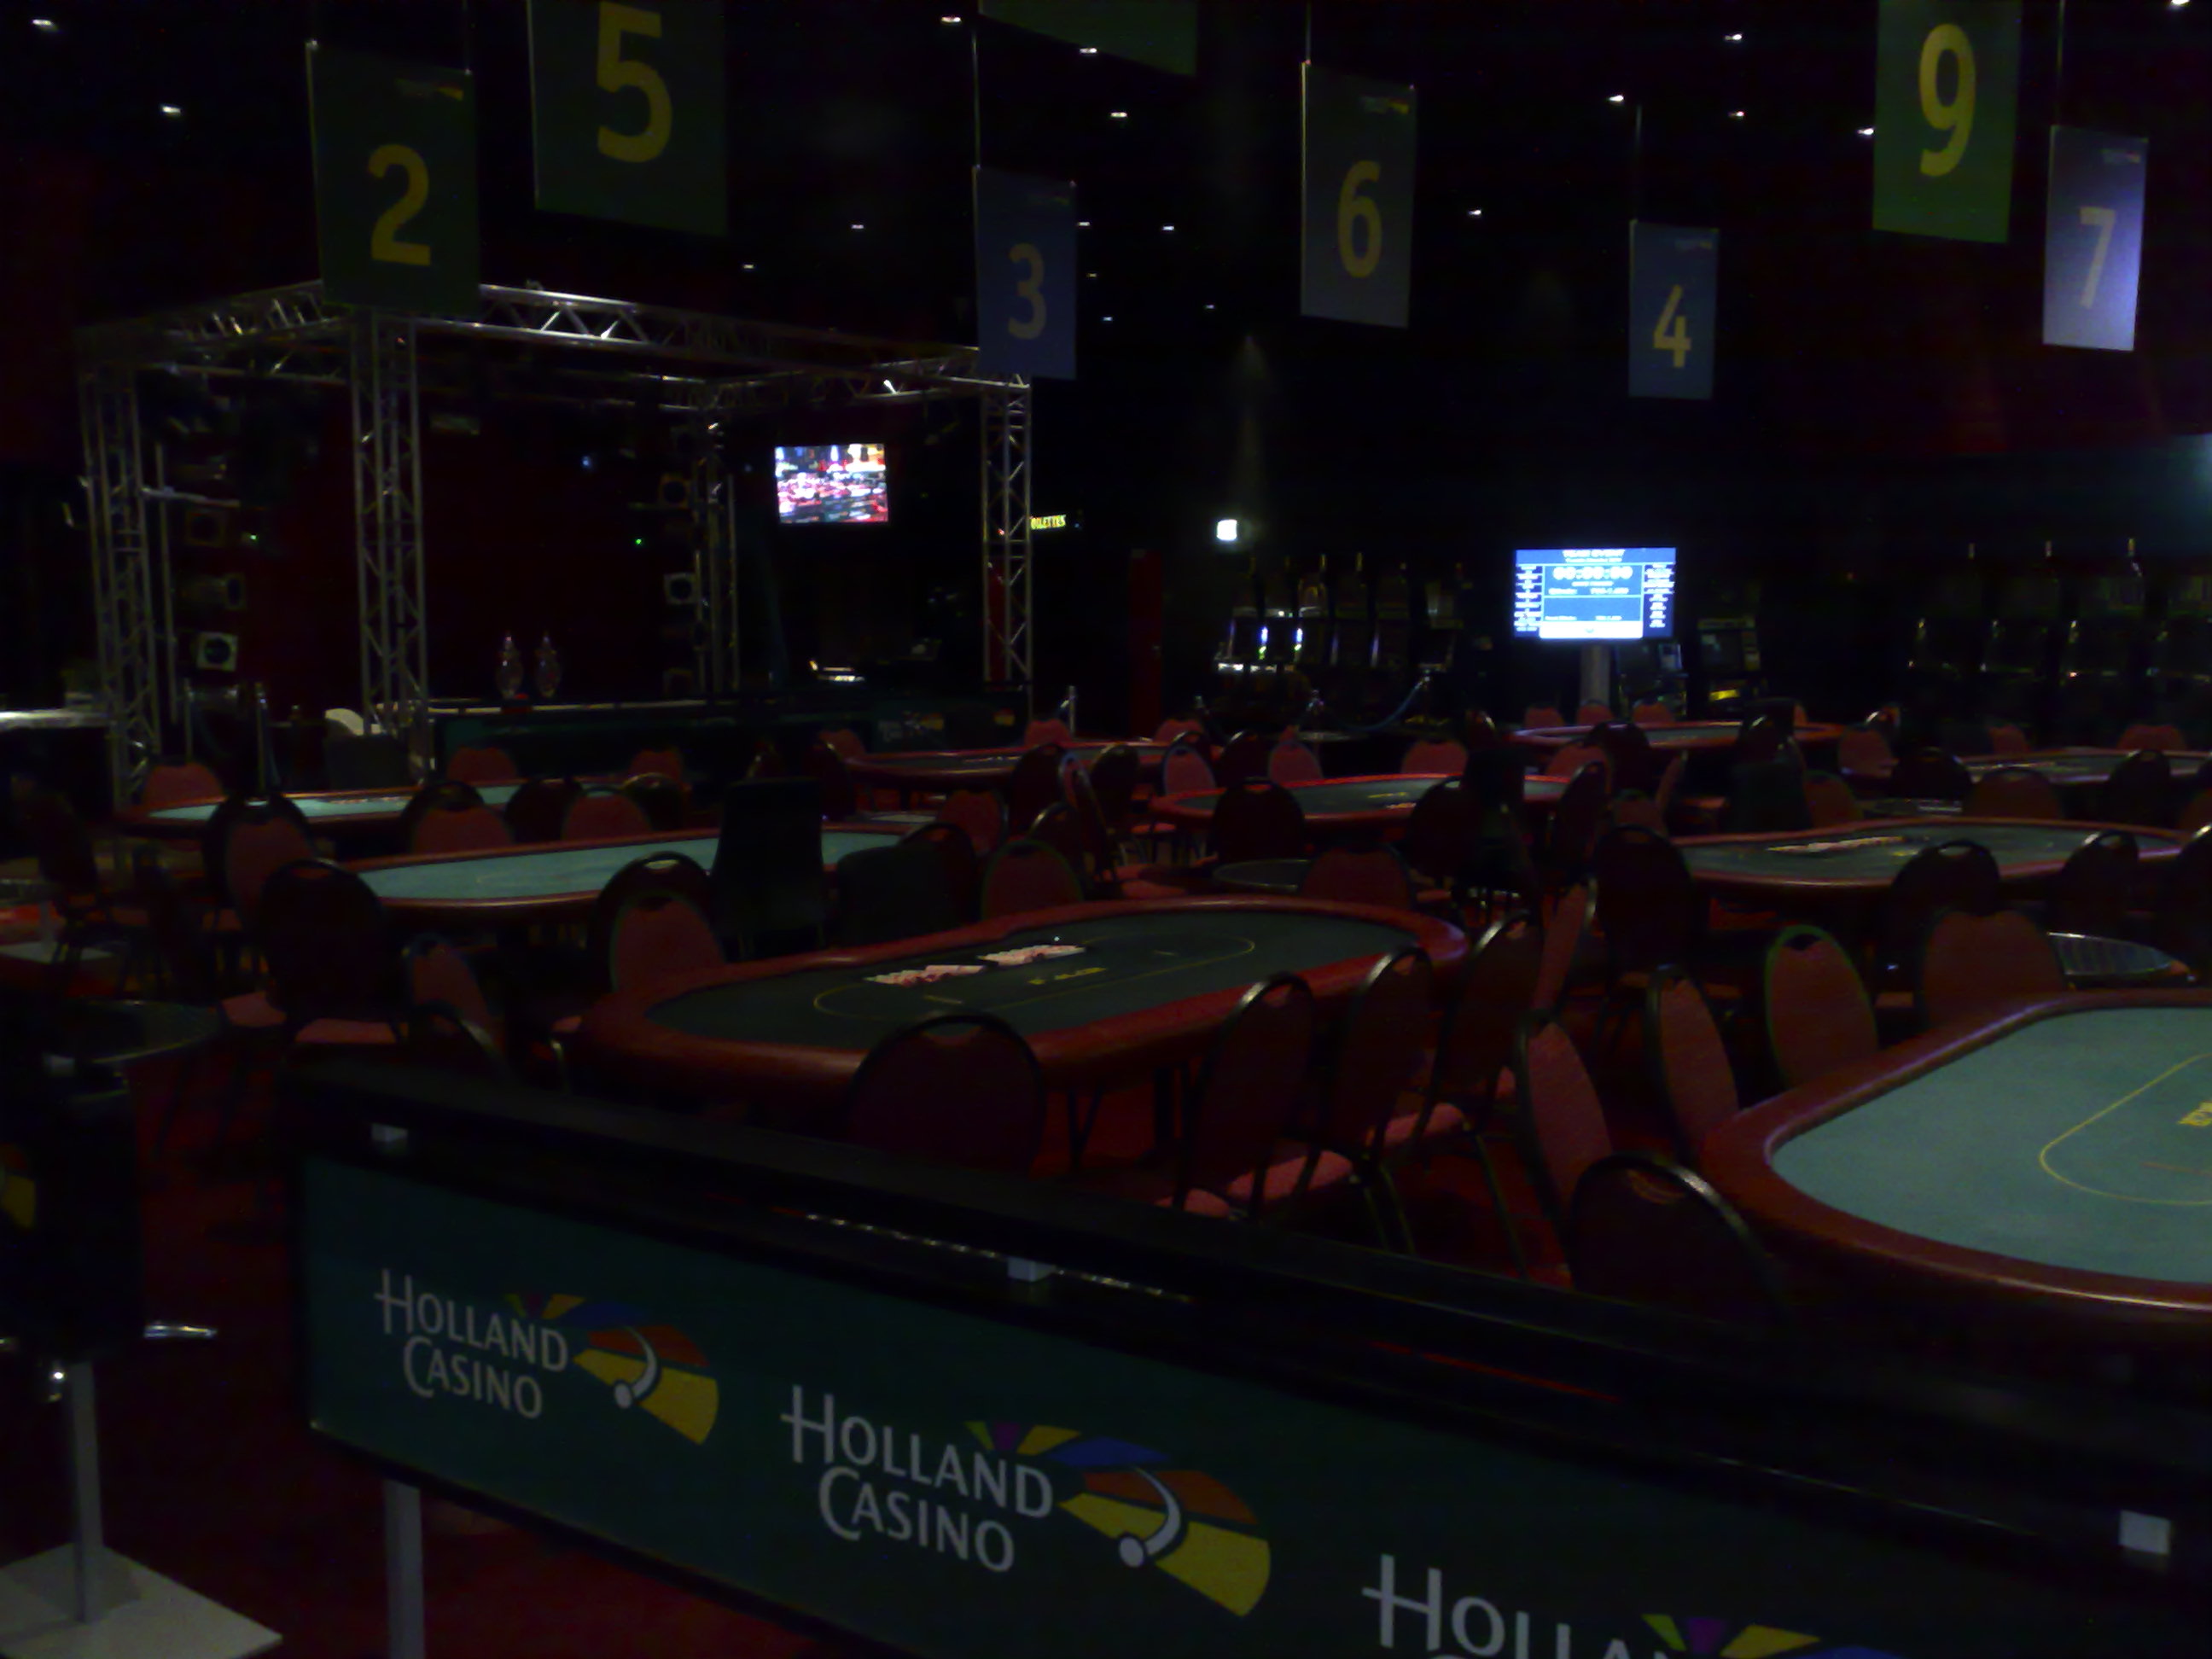 Holland Casino Enschede pokerspeelzaal